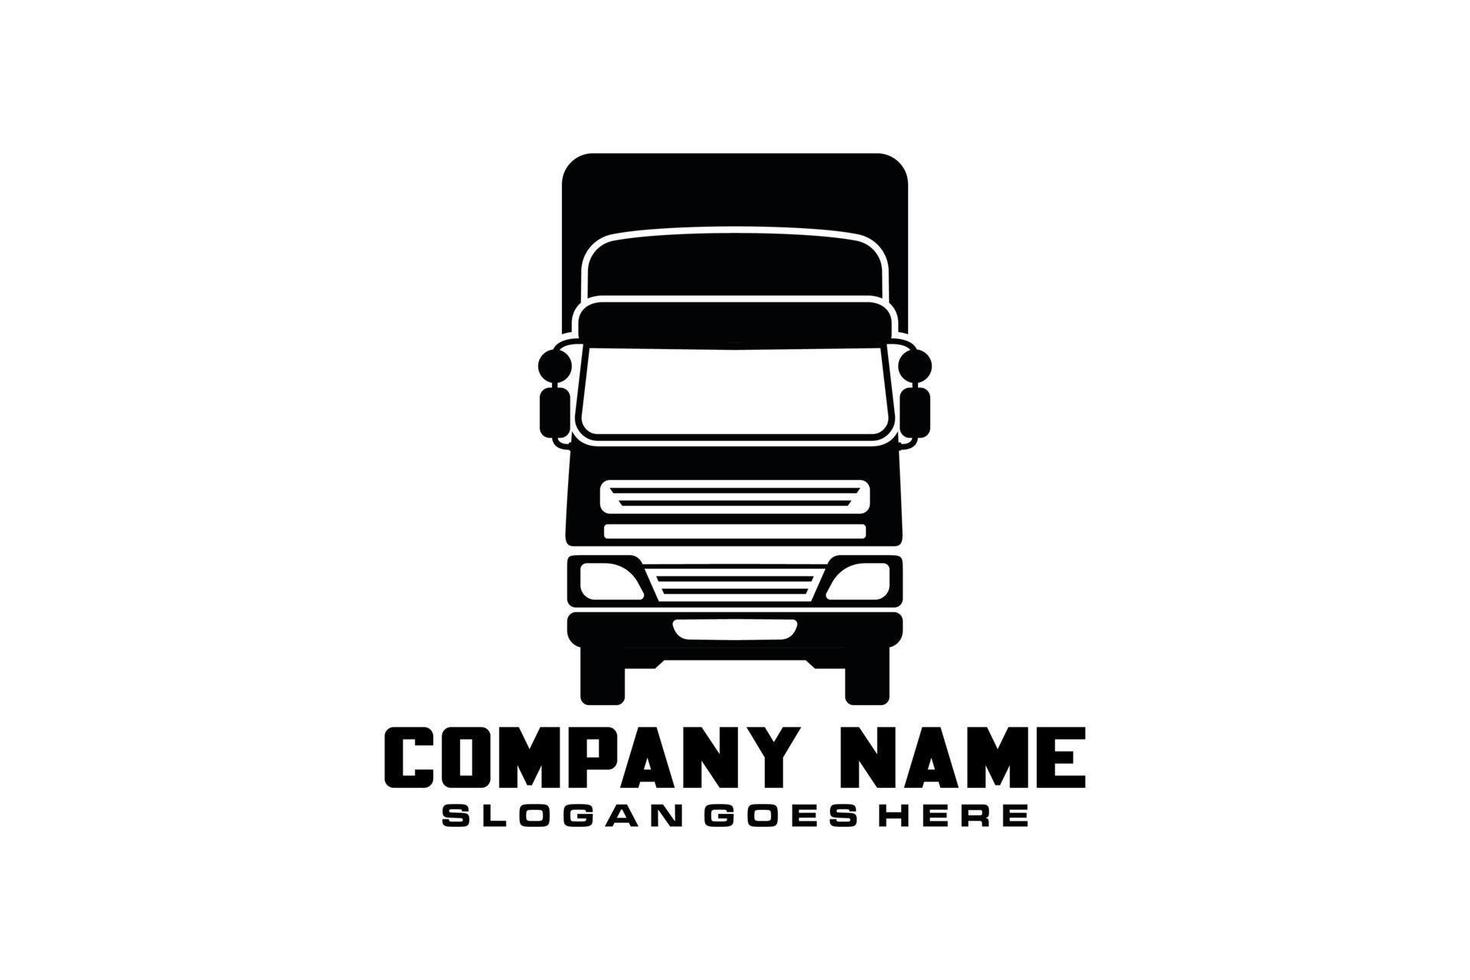 vector de diseño de logotipo de camión semi